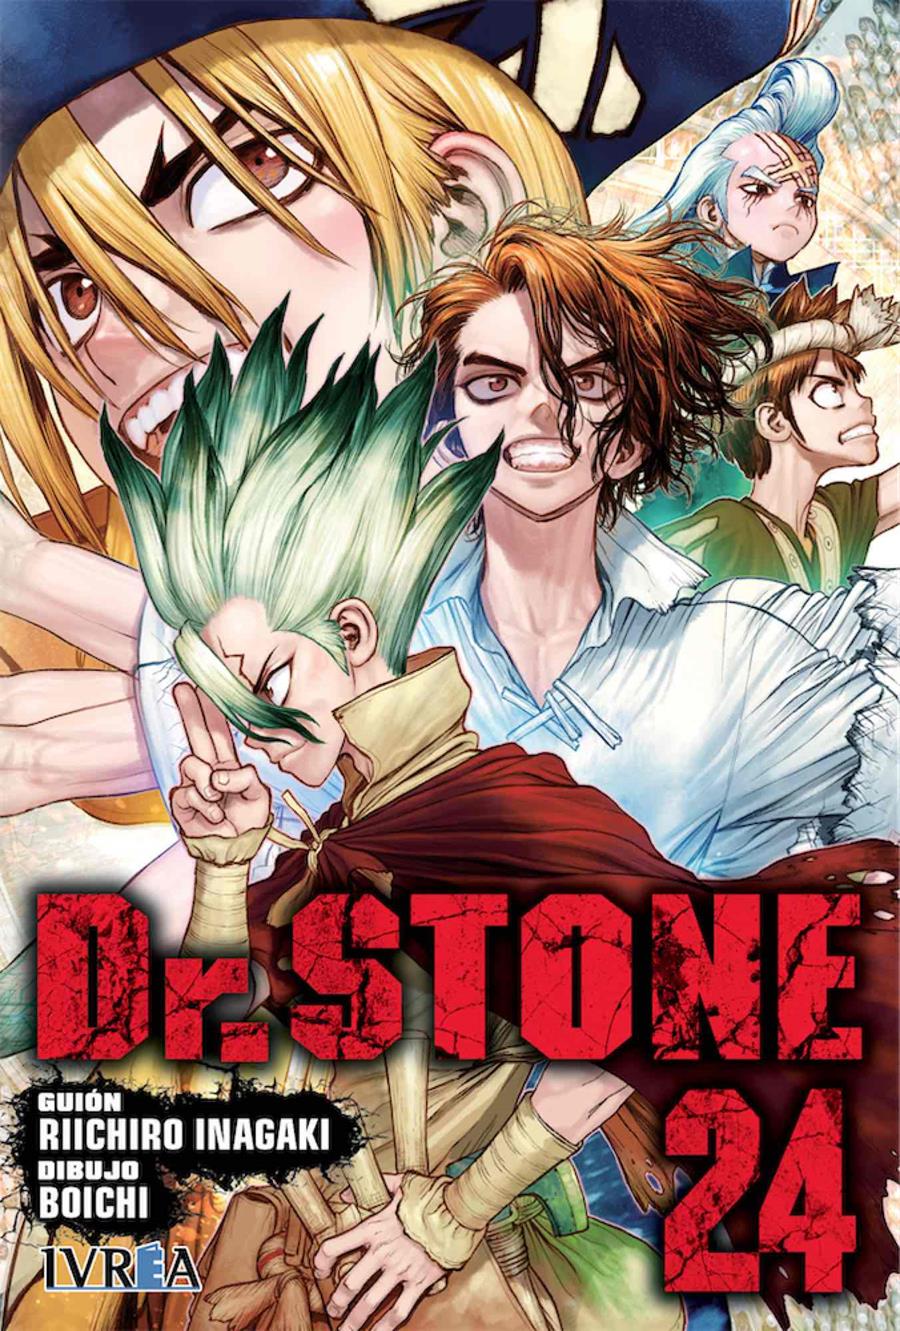 Dr. Stone 24 | N0722-IVR04 | Riichiro Inagaki, Boichi | Terra de Còmic - Tu tienda de cómics online especializada en cómics, manga y merchandising